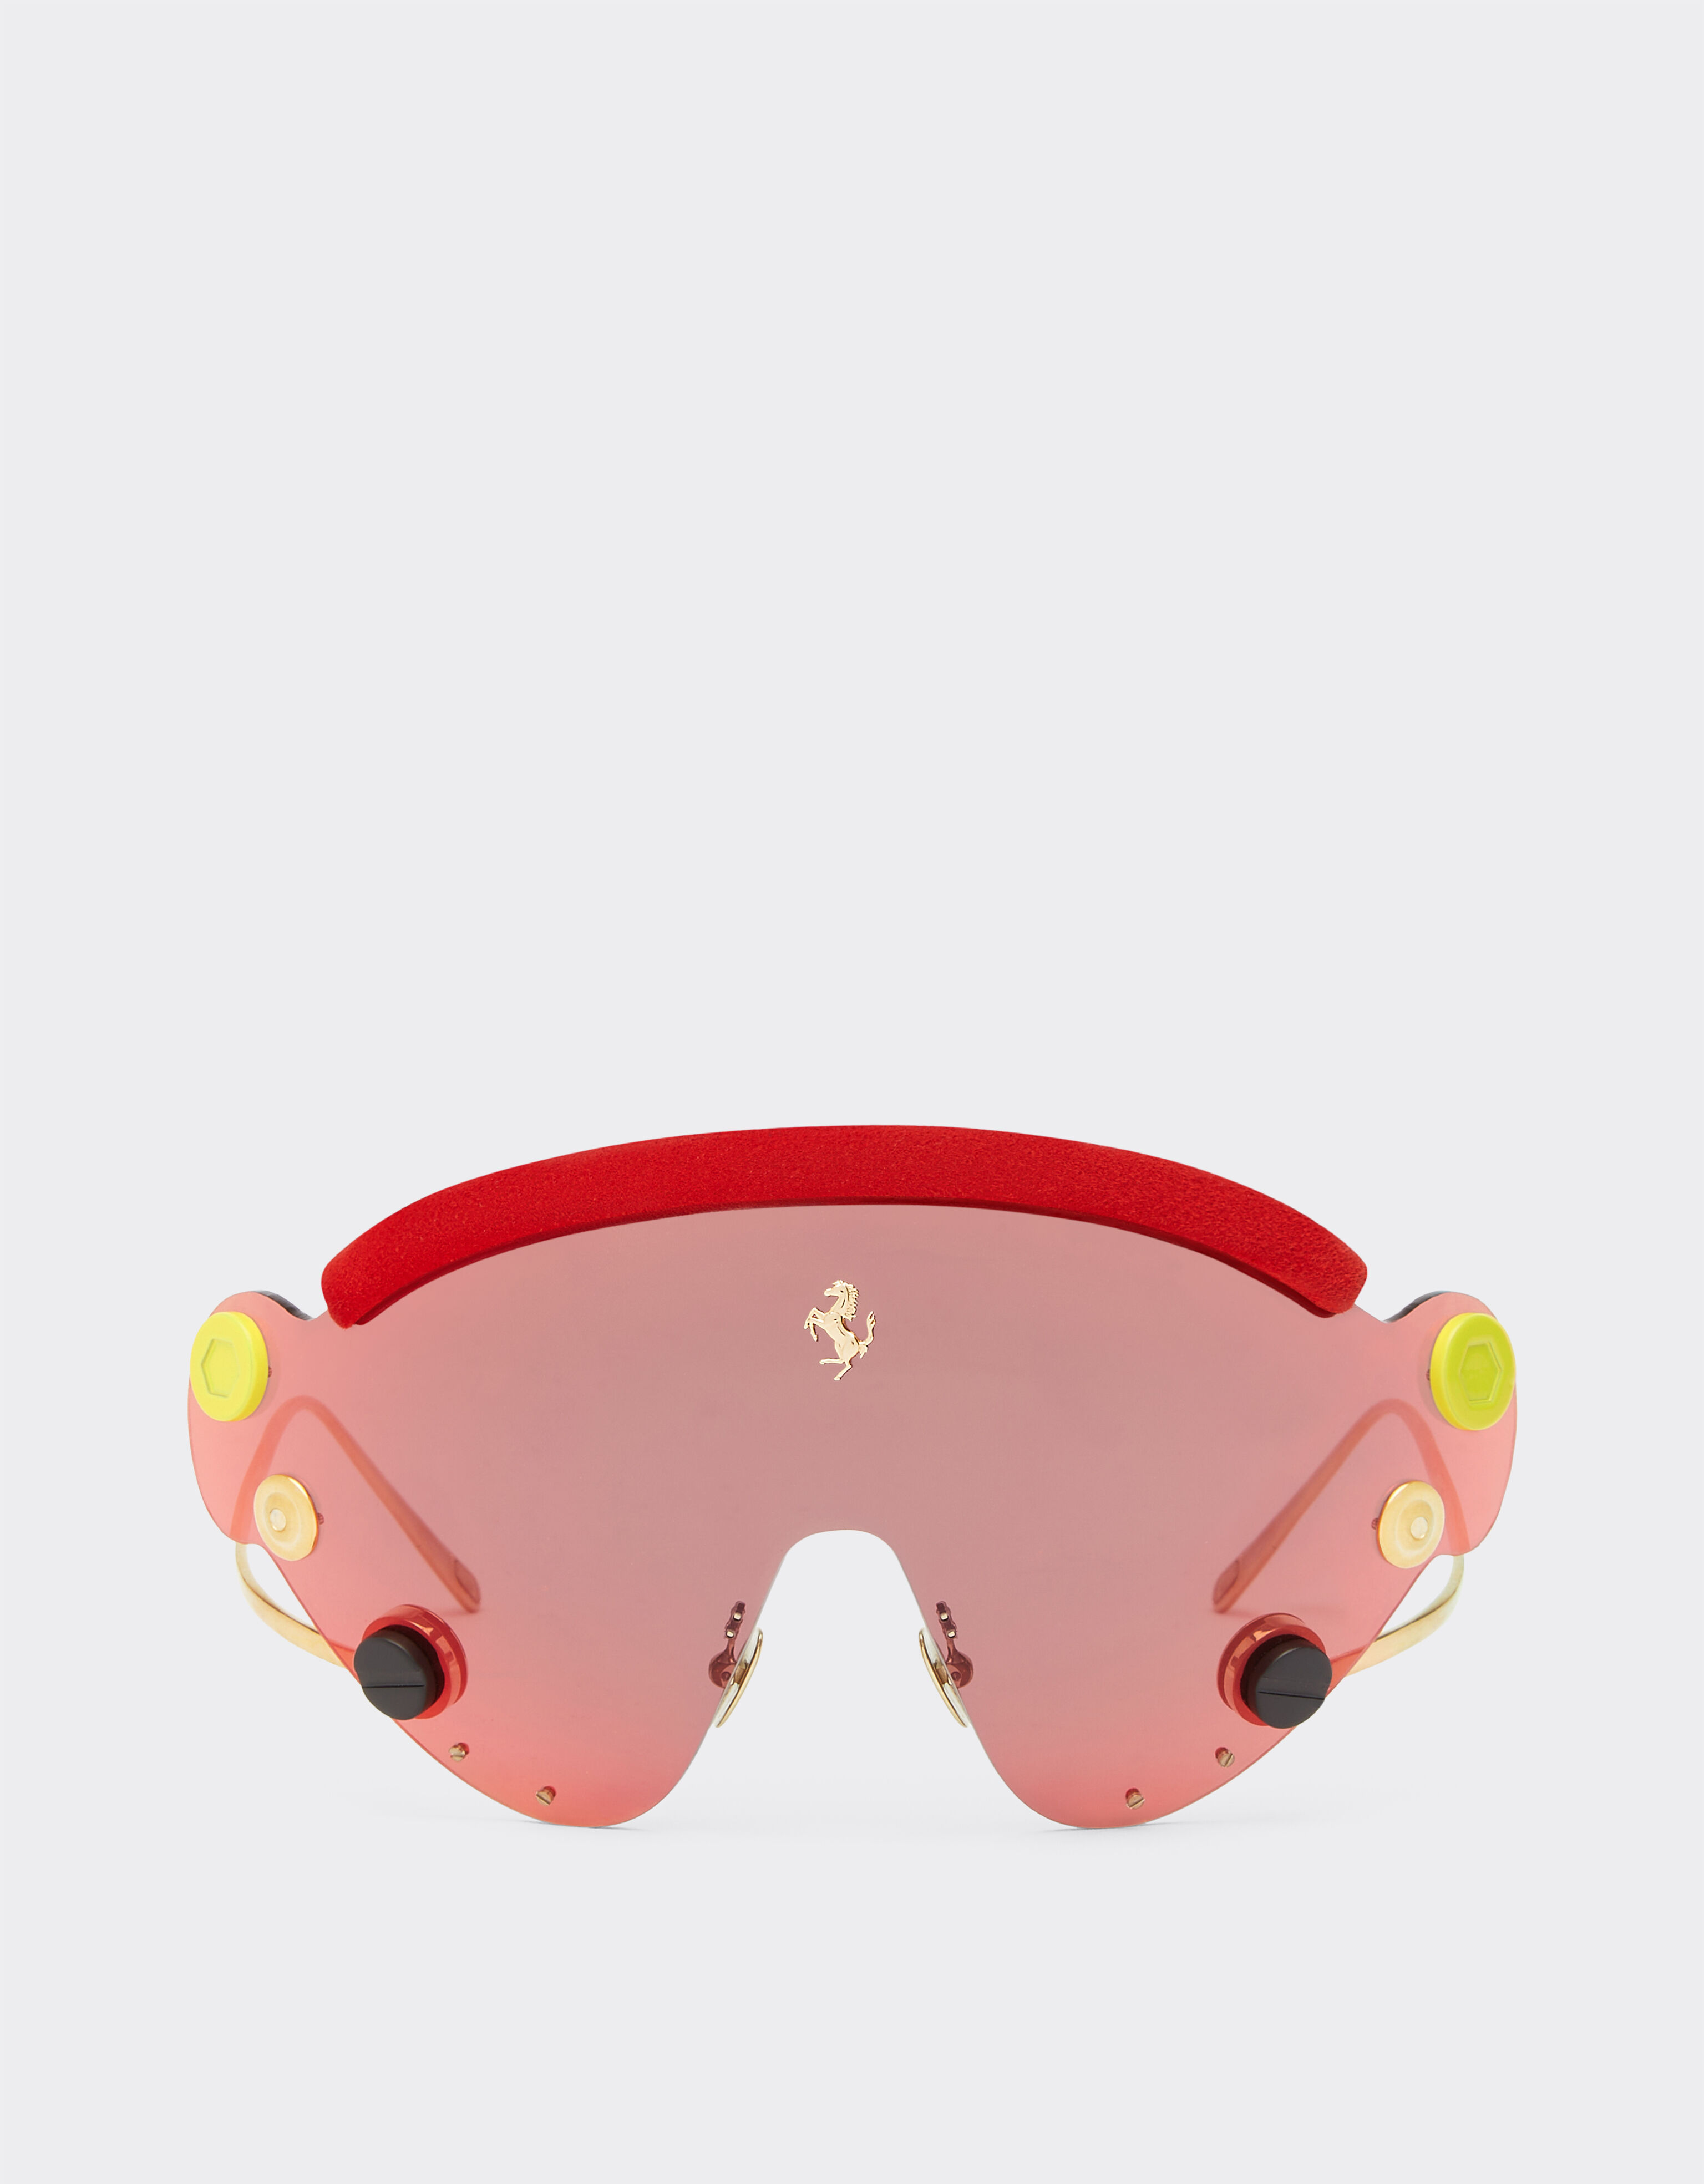 Ferrari Gafas de sol de Ferrari de edición limitada en metal rojo y dorado con pantalla de espejo roja Oro F0411f